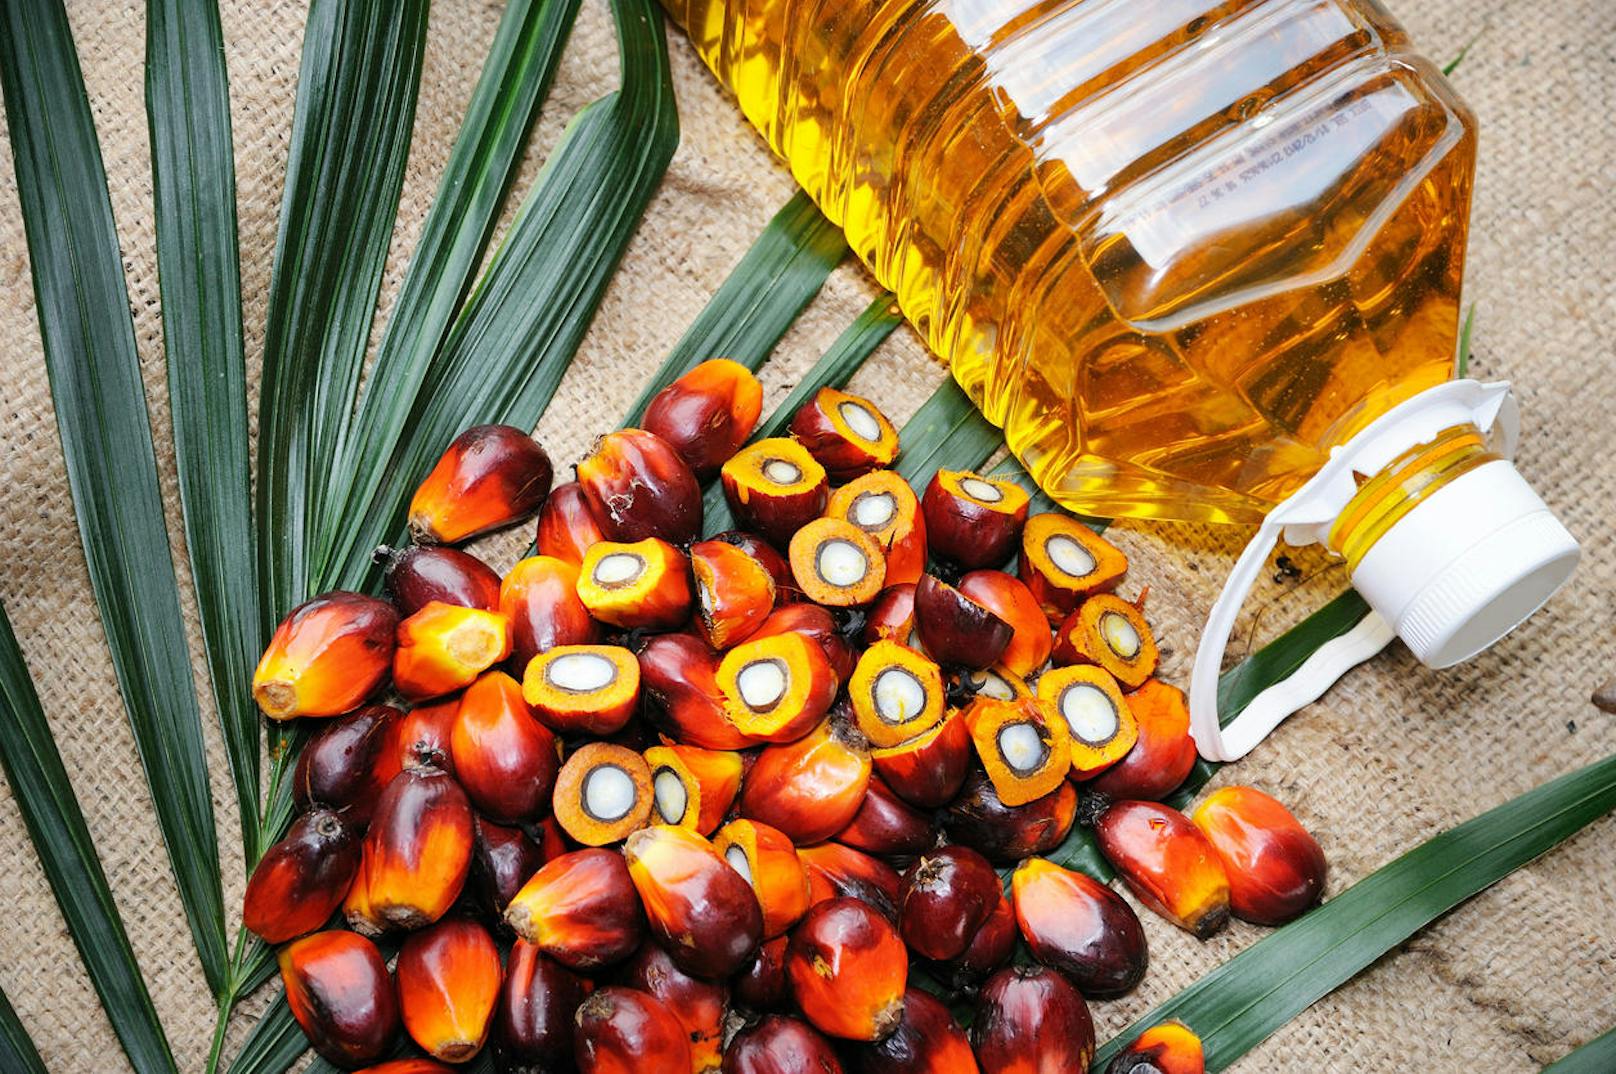 Palmöl ist in tausenden Lebensmitteln in österreichischen Supermärkten zu finden.